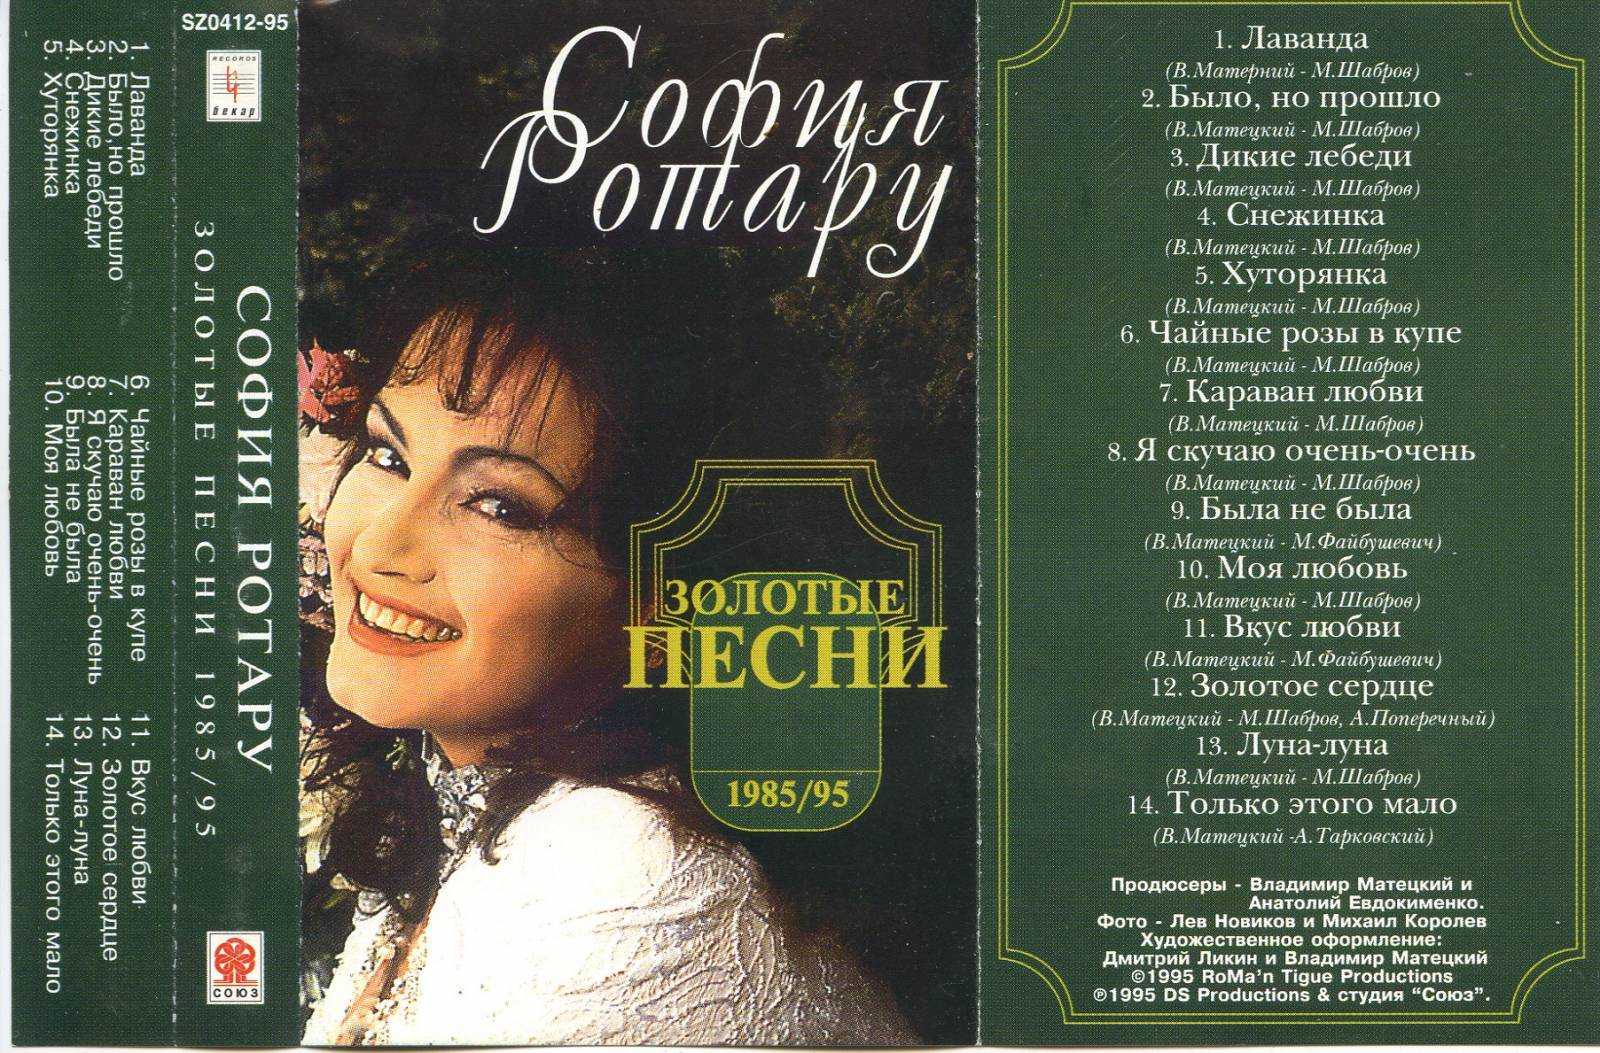 Ротару я скучаю. Софія Ротару-Караван любви 1993 CD.